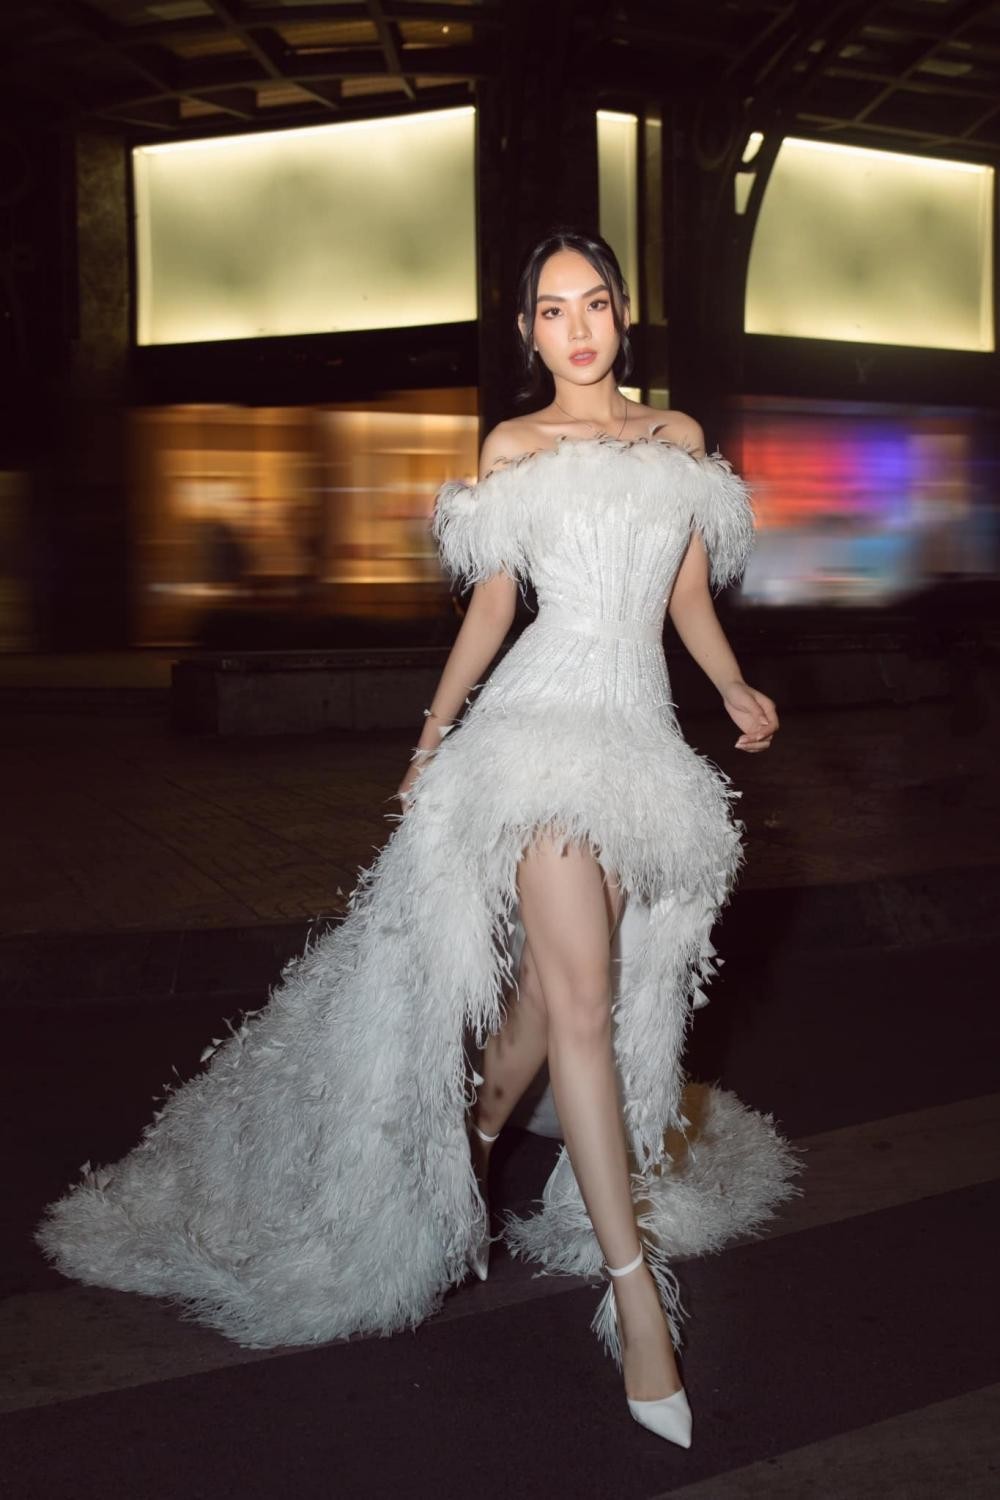 Hoa hậu Mai Phương cực khéo chọn đầm dạ hội, thiết kế nào cũng tôn dáng tuyệt đối - Ảnh 8.